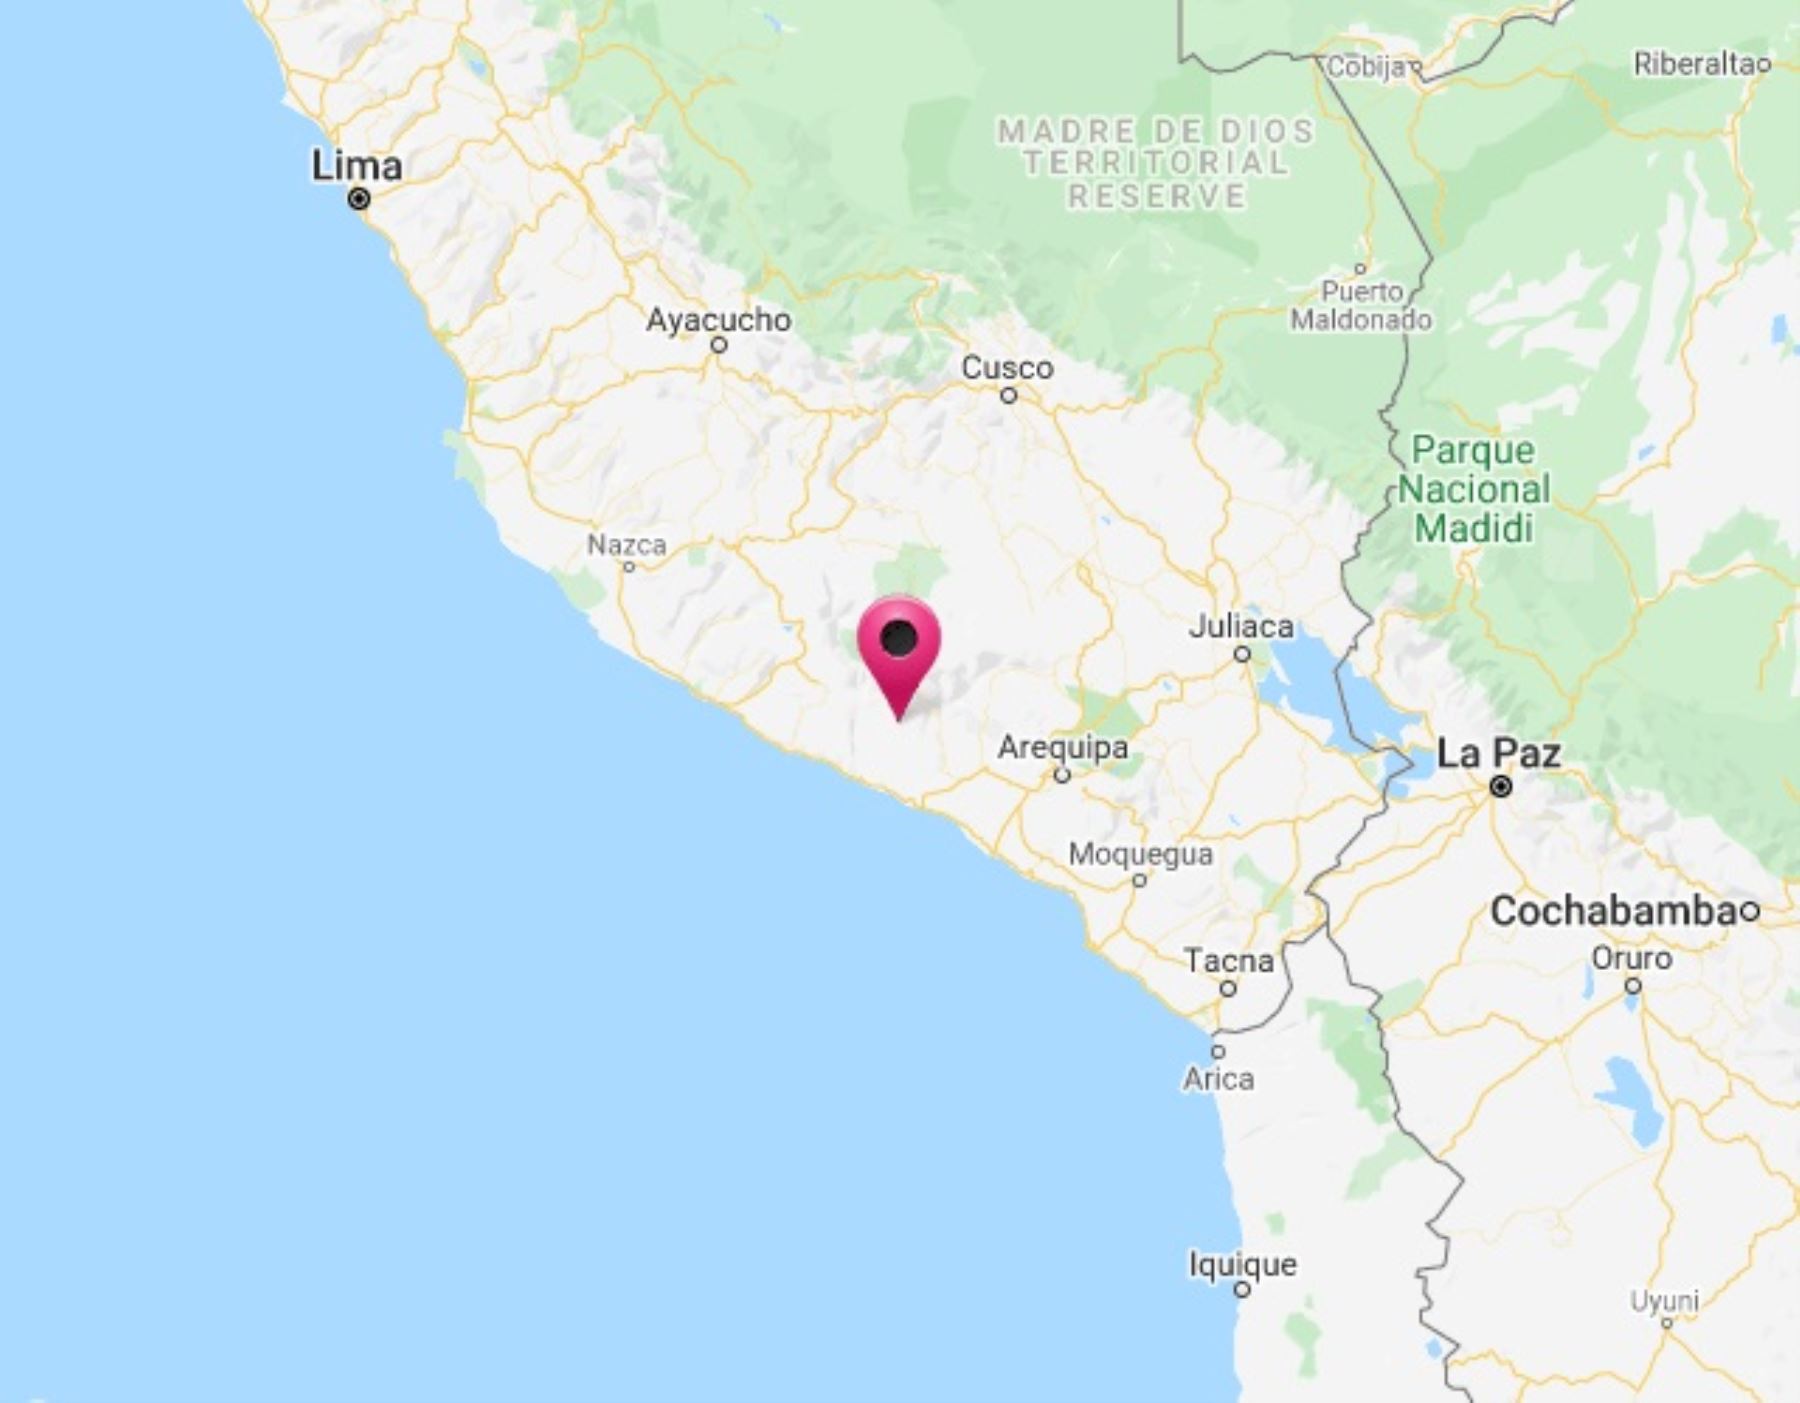 Arequipa fue remecida esta mañana por un sismo de magnitud 4.2, informó el IGP.